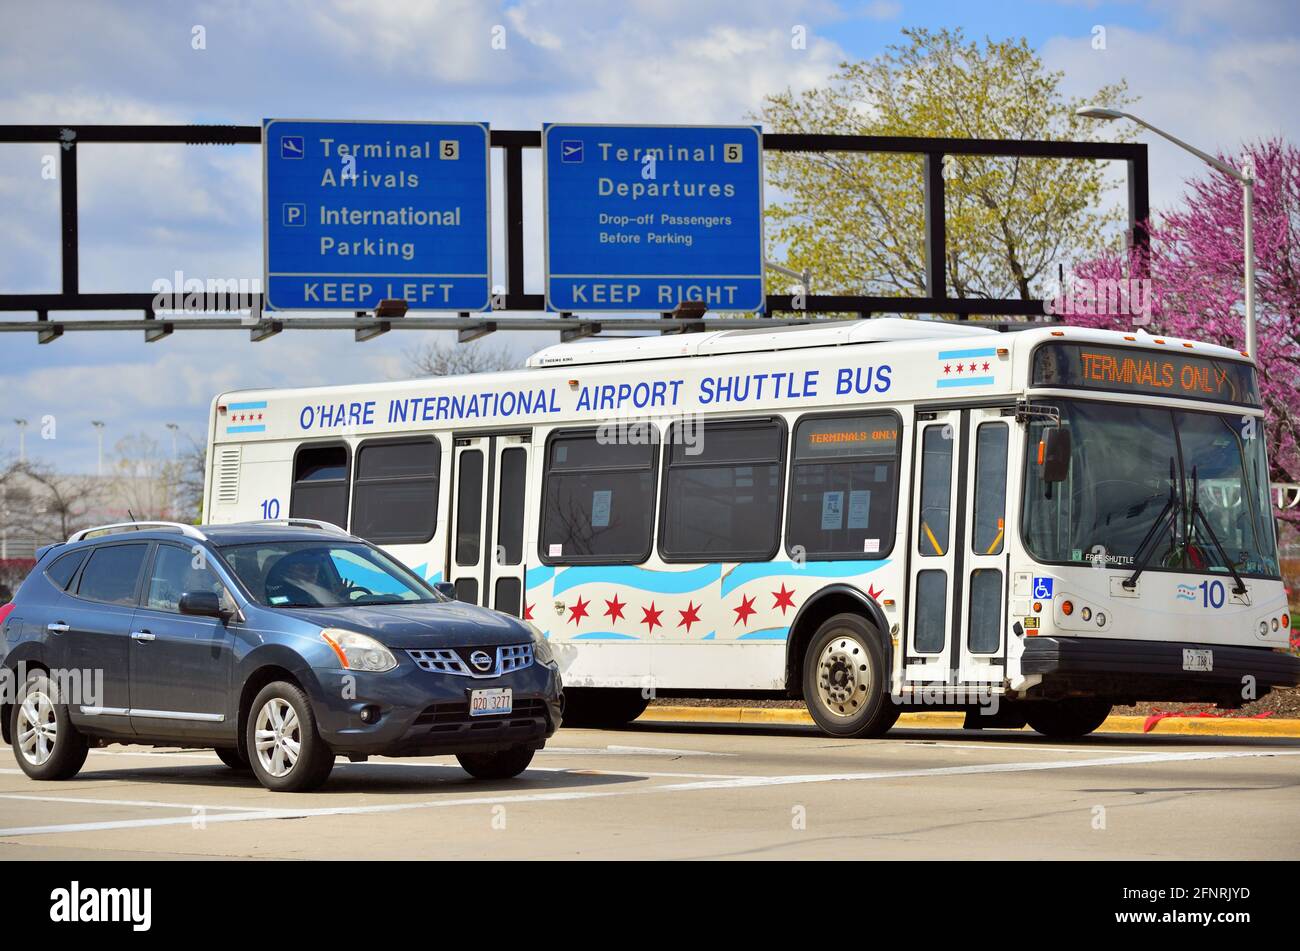 Chicago, Illinois, Stati Uniti. Un autobus navetta in uso presso l'Aeroporto Internazionale o'Hare. O'Hare è uno degli aeroporti più trafficati degli Stati Uniti e del mondo. Foto Stock